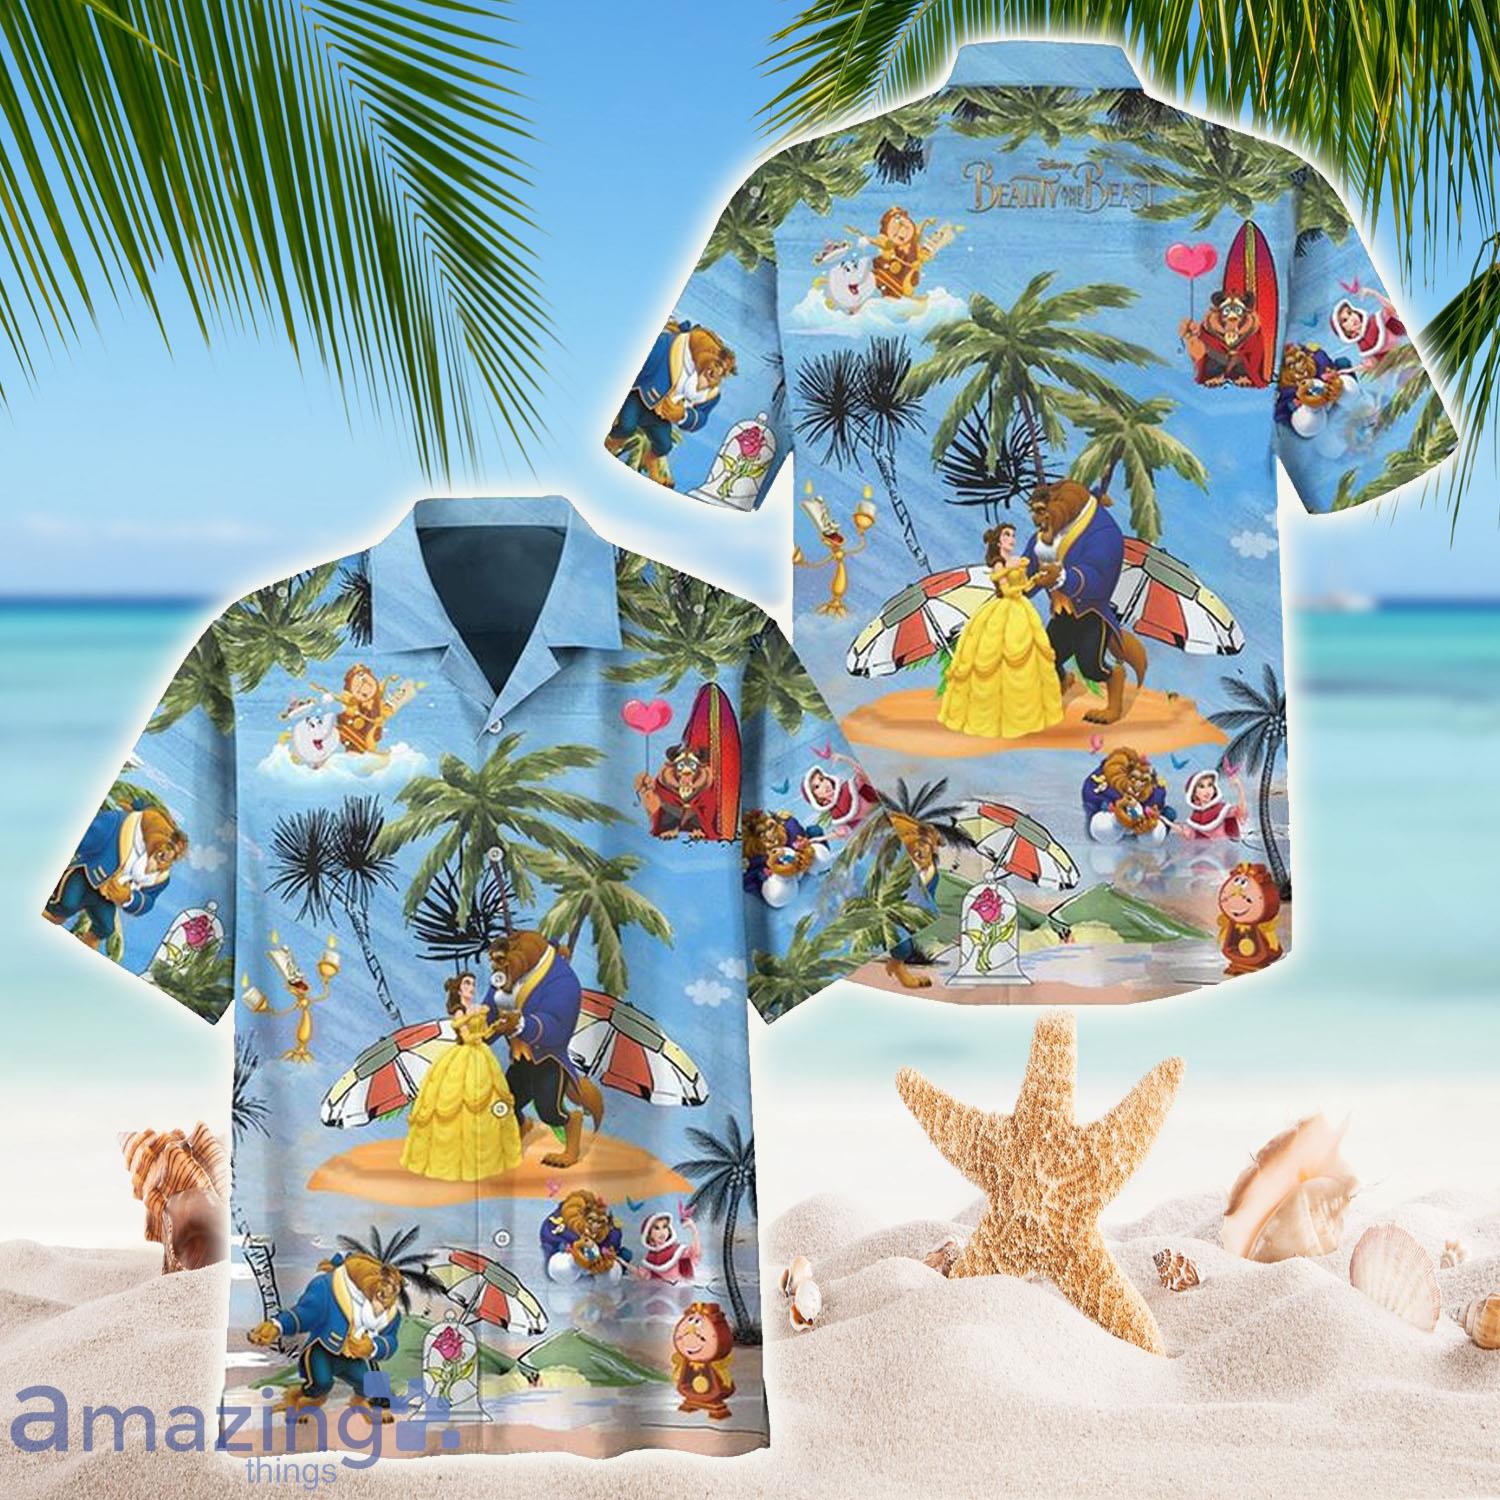 Disney Beauty And The Beast Hawaiian Shirt - Disney Beauty And The Beast Hawaiian Shirt